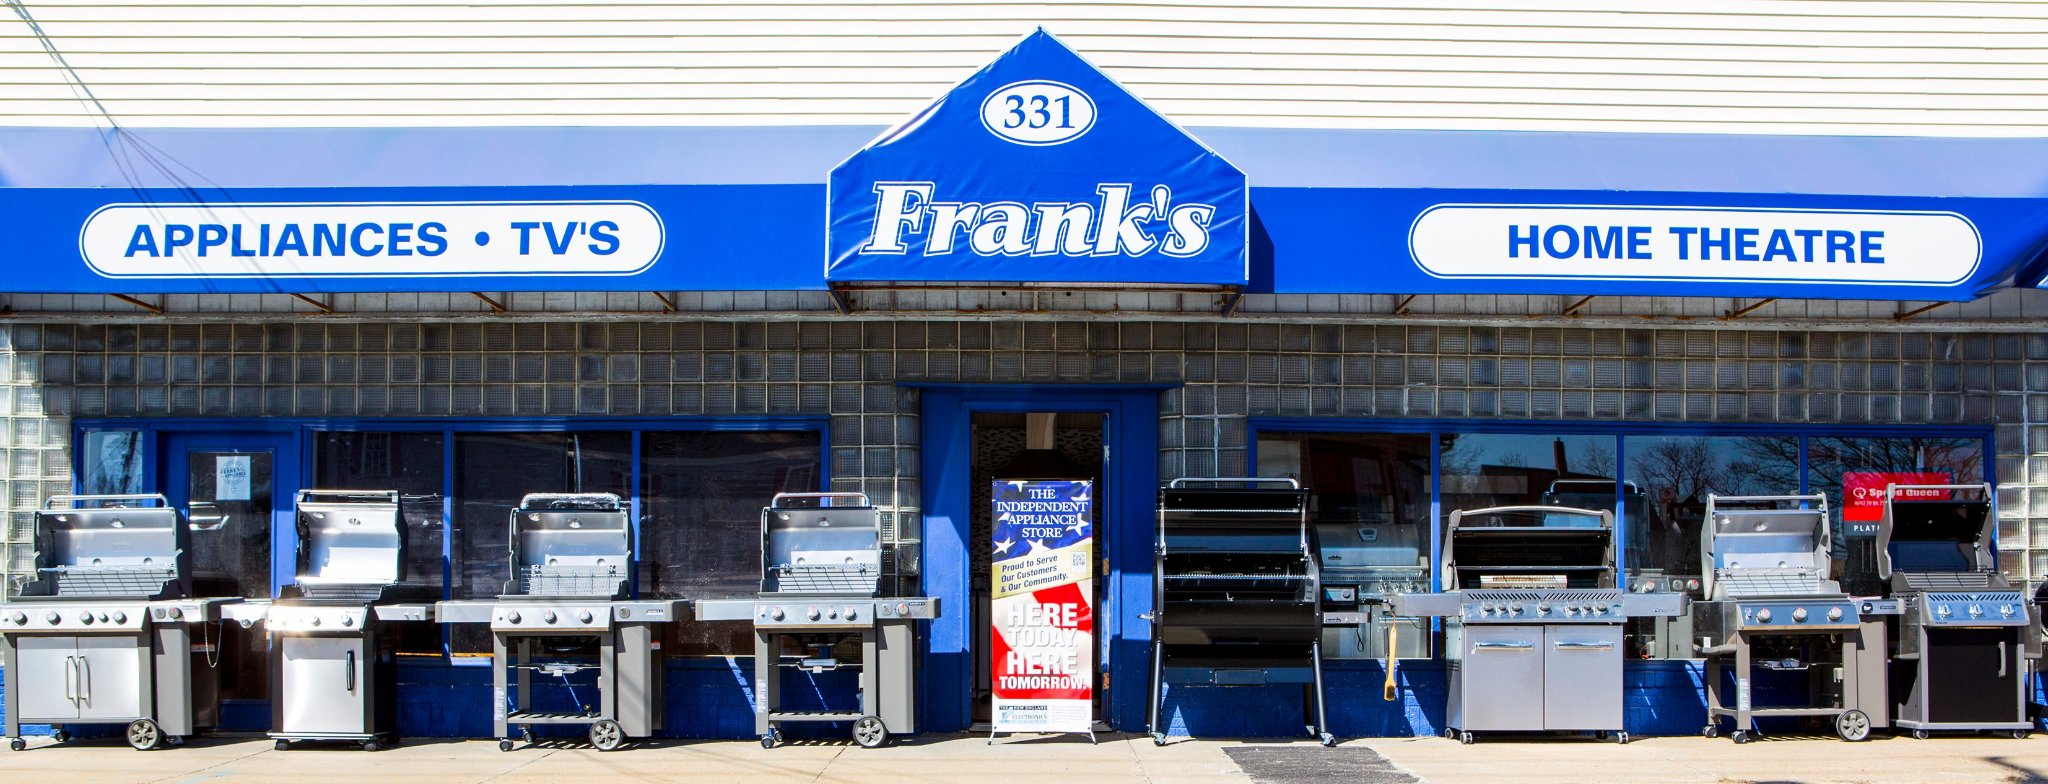 Frank's Appliance